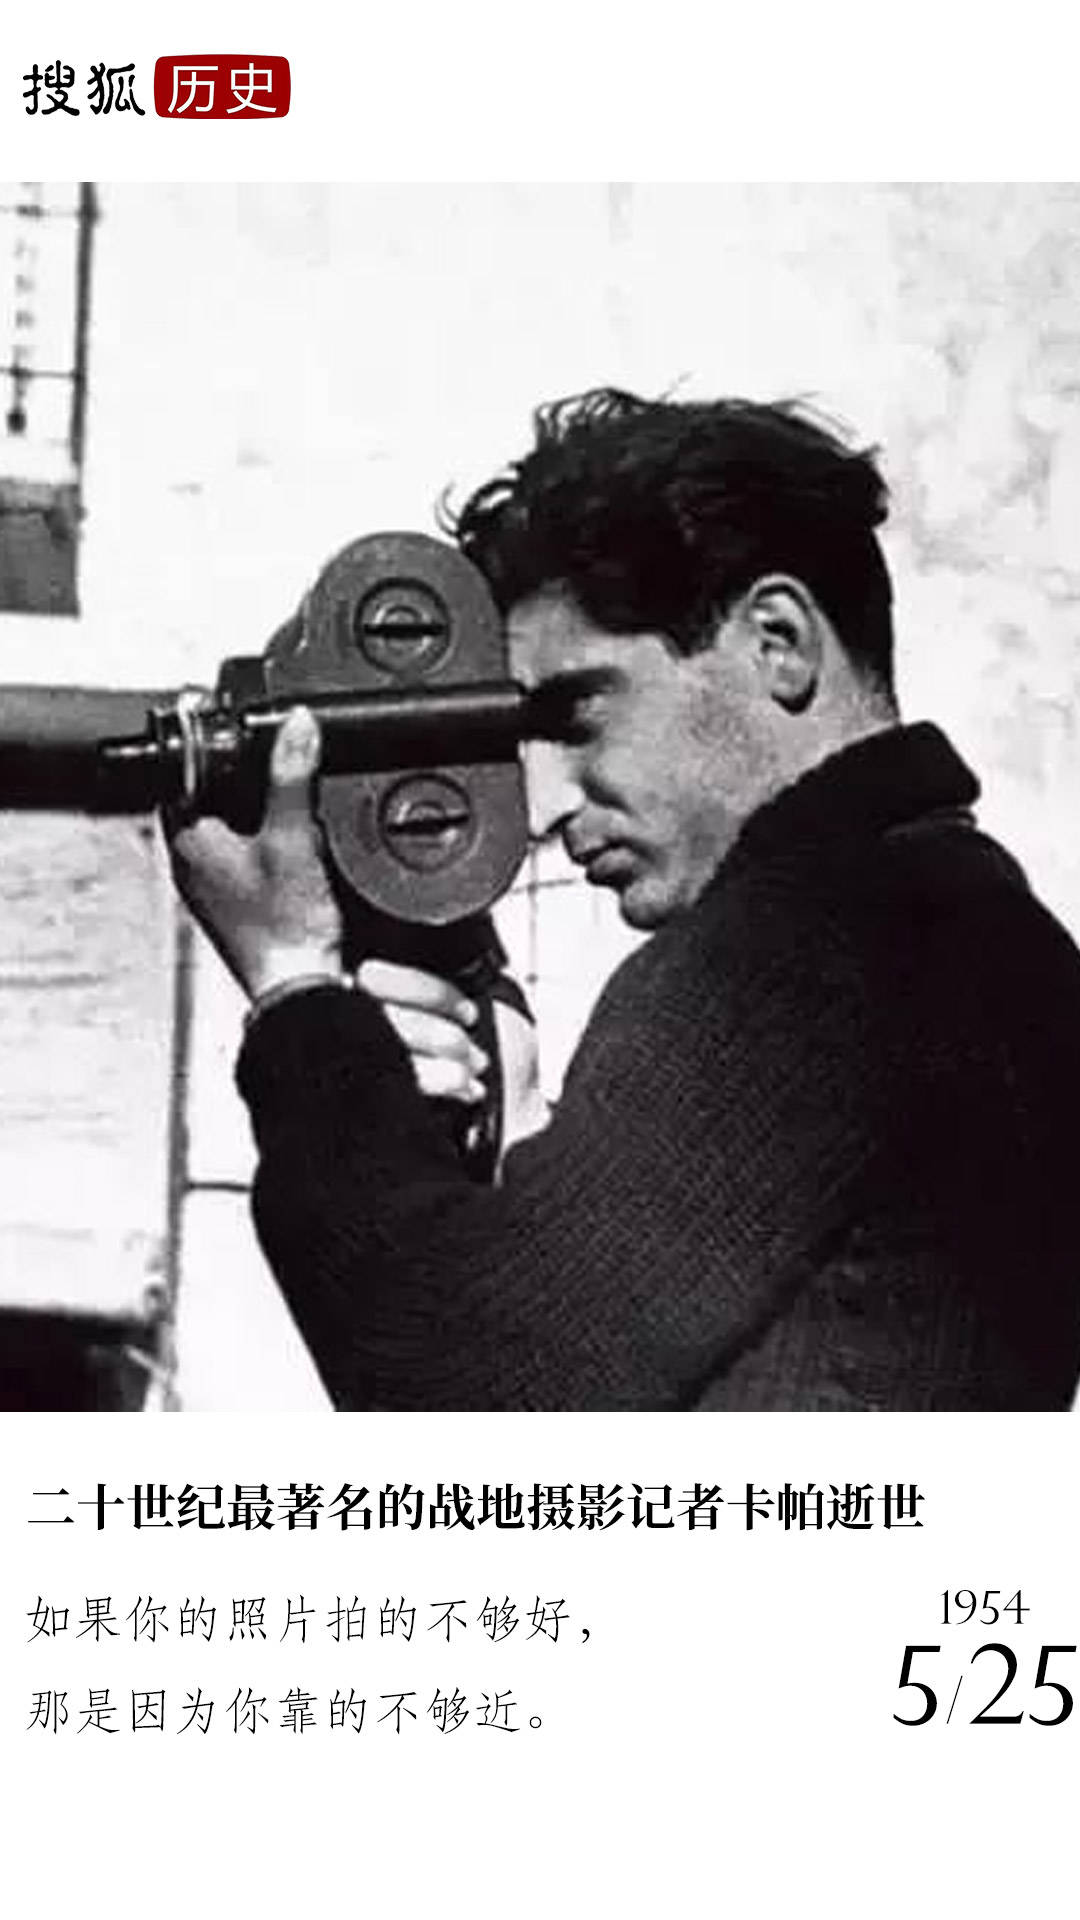 历史上的今天 | 二十世纪最著名的战地摄影记者之一卡帕逝世